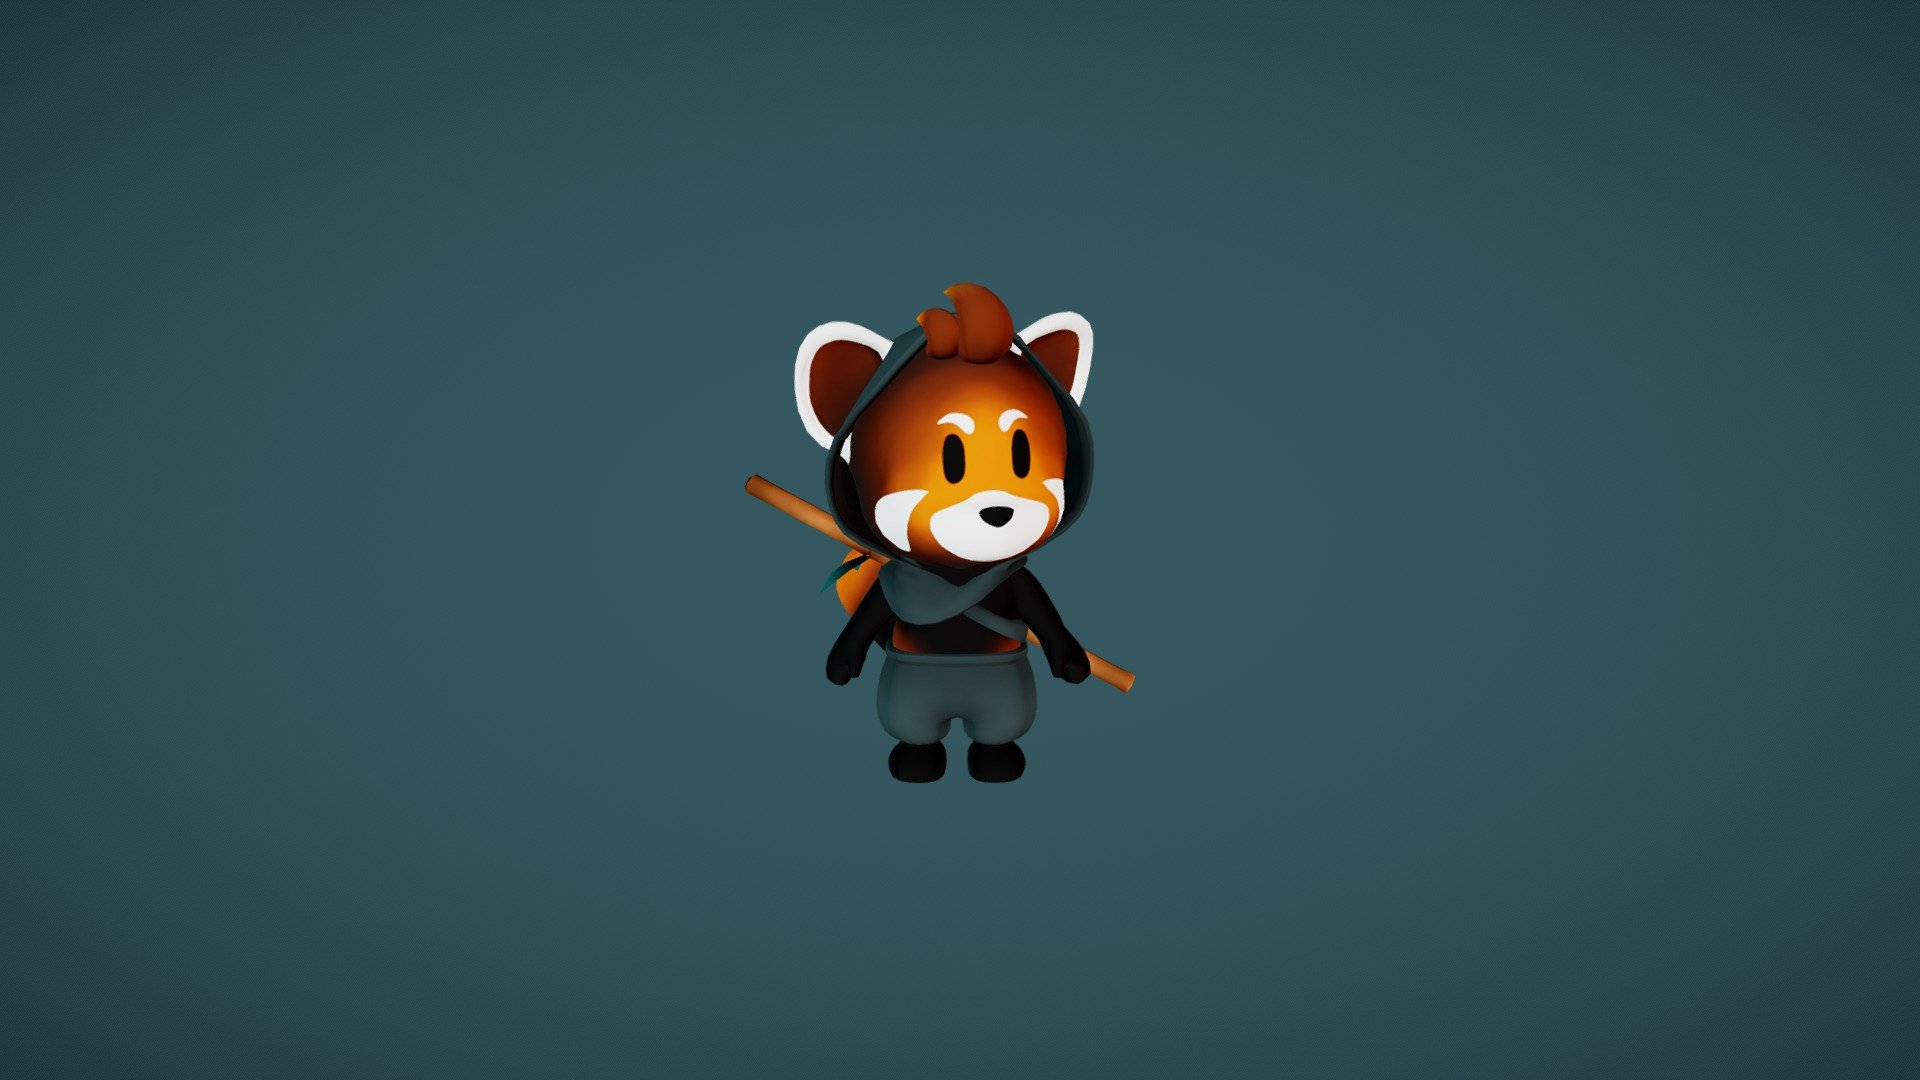 Red Panda - 3D model by AlinaMracek 3d model